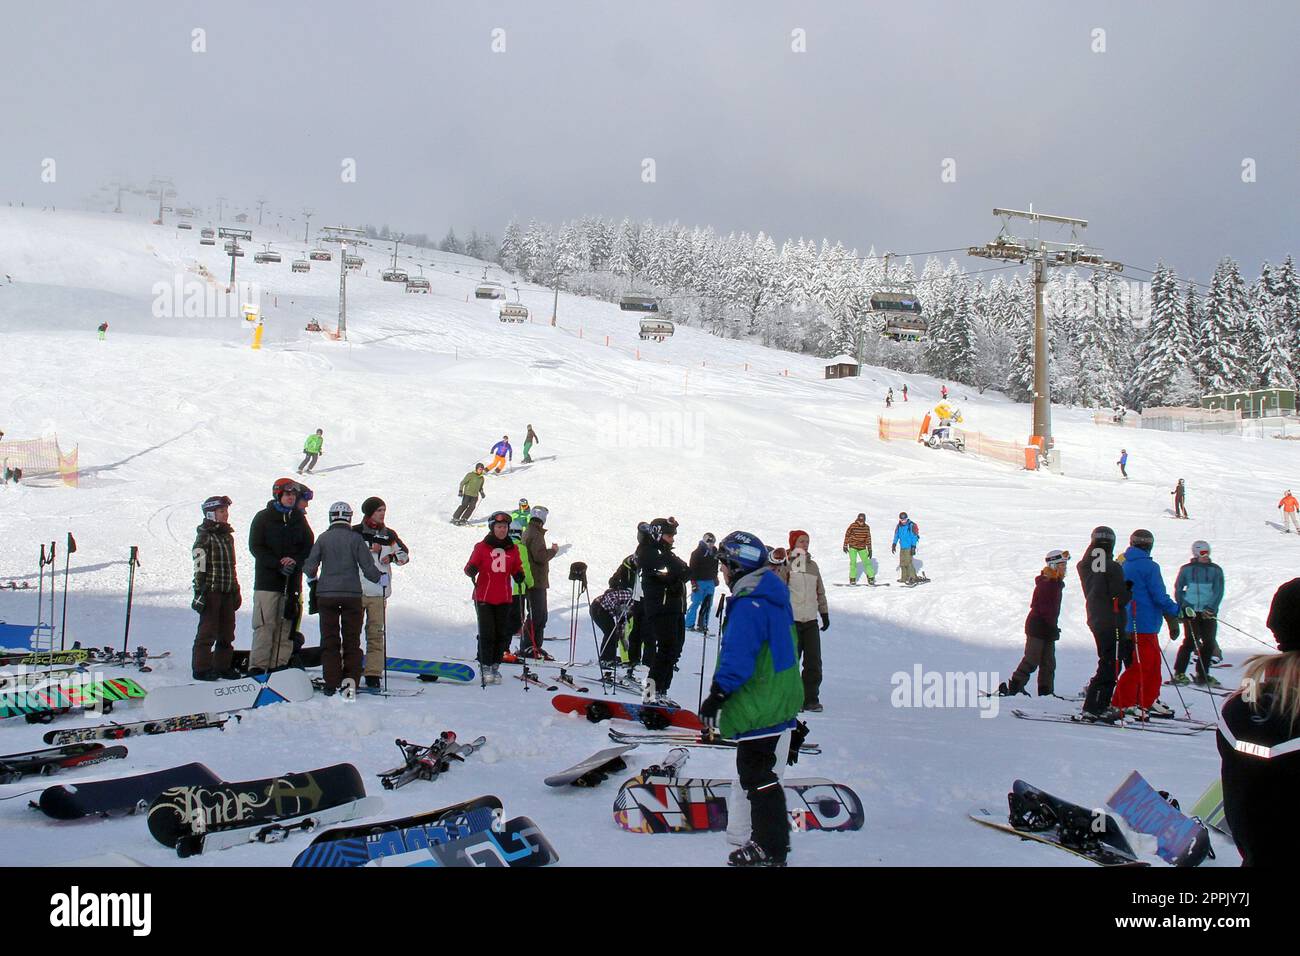 Kontraste - Traumhafte Wintersportbedingungen am Feldberg - Aufnahme aus dem Wintersport-Paradies Feldberg (Landkreis Breisgau-Hochschwarzwald) vom 0 Foto Stock